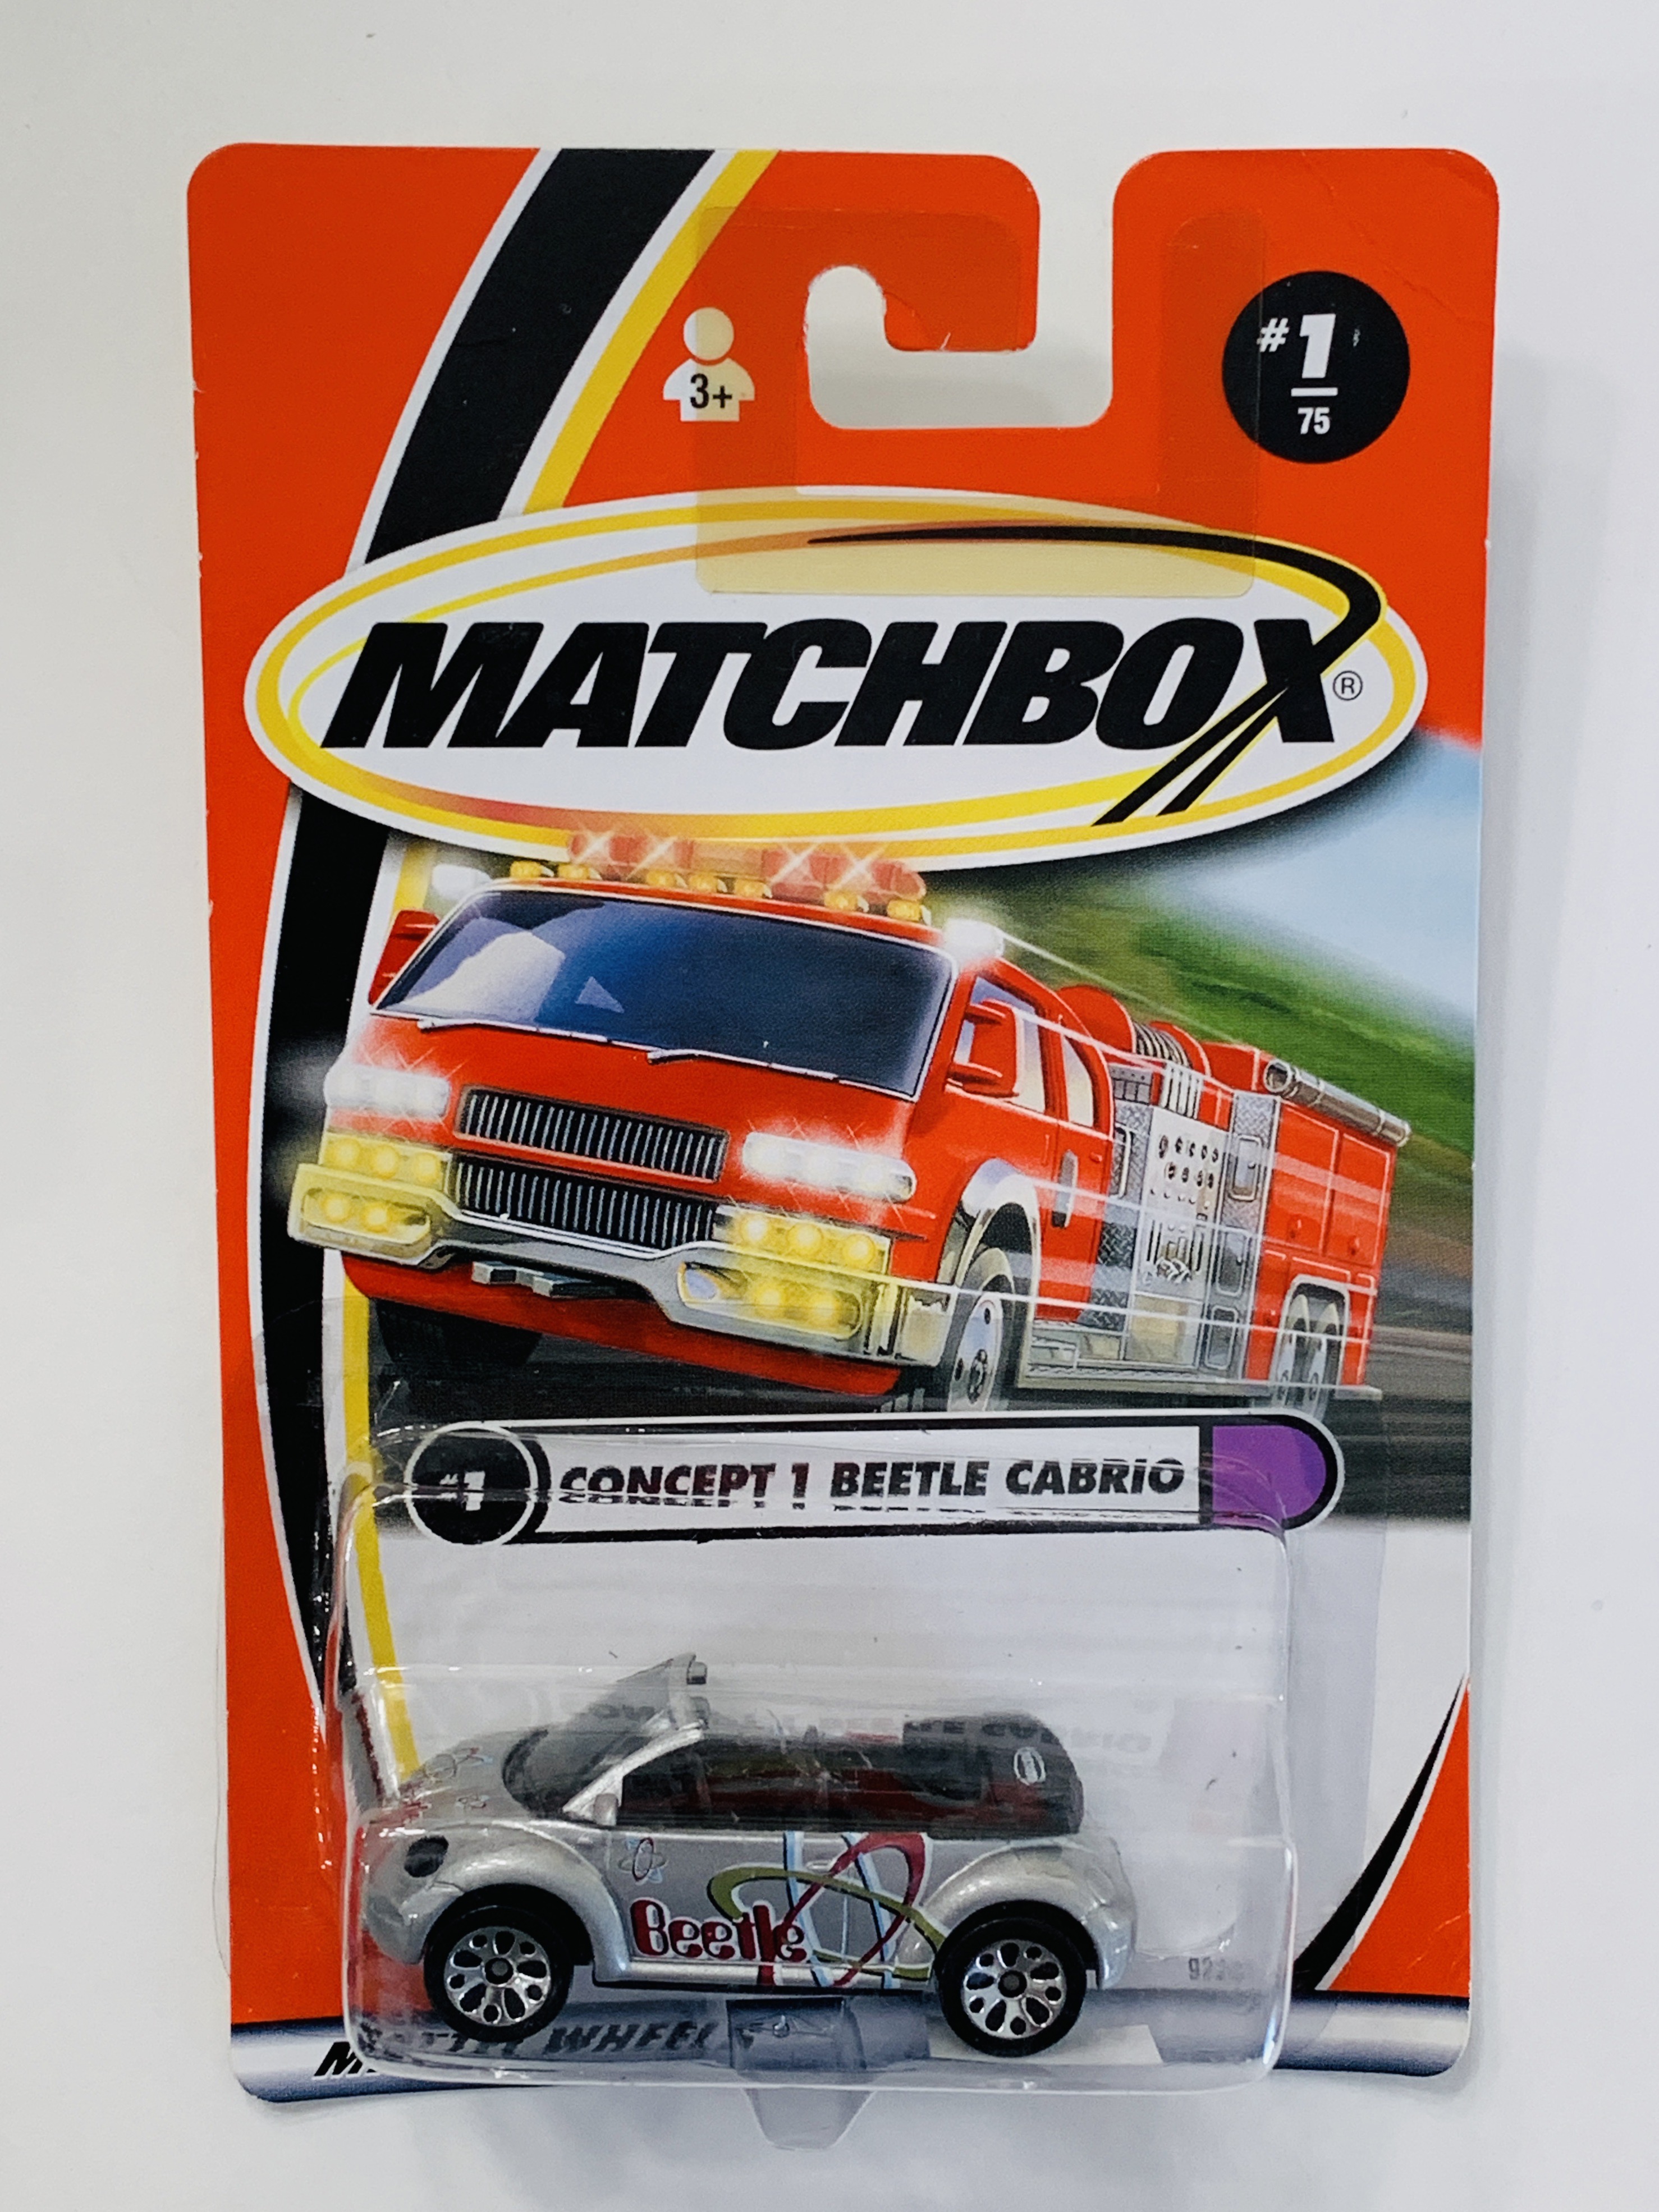 Matchbox #1 Concept 1 Beetle Cabrio - Lace Wheels